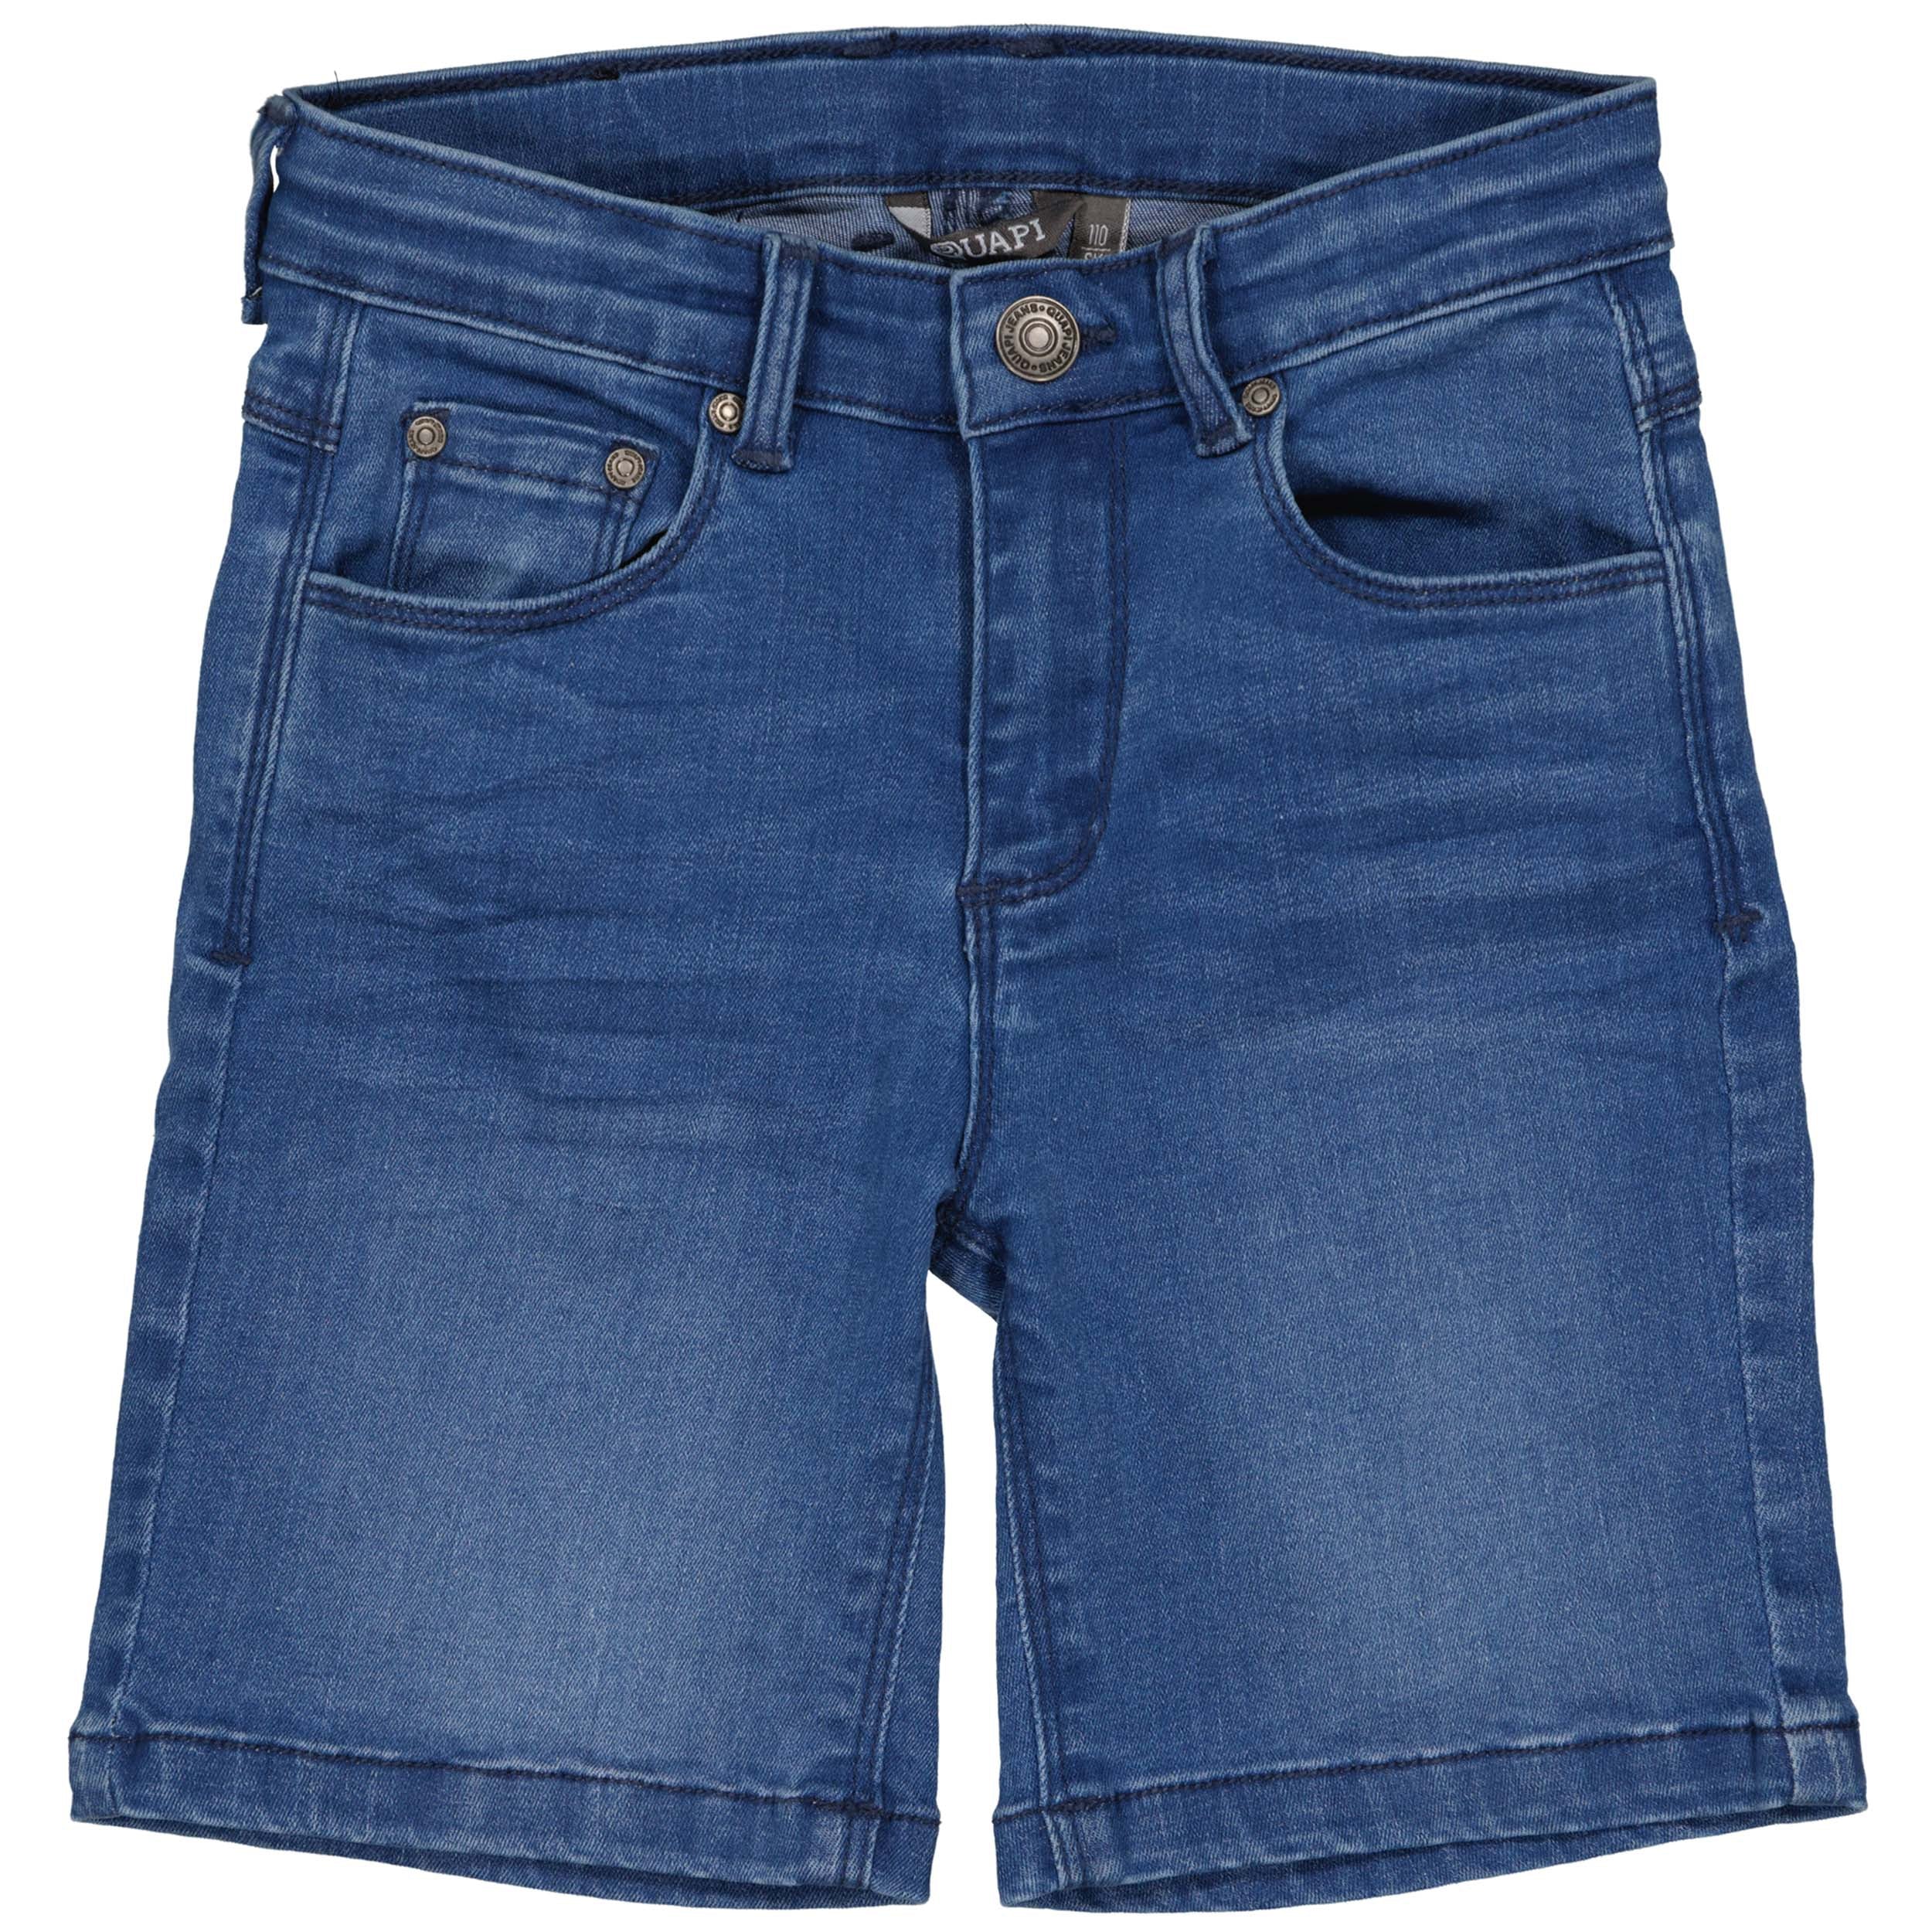 Jongens Jeans Short BUSEQS242 van  in de kleur Blue Denim in maat 122-128.